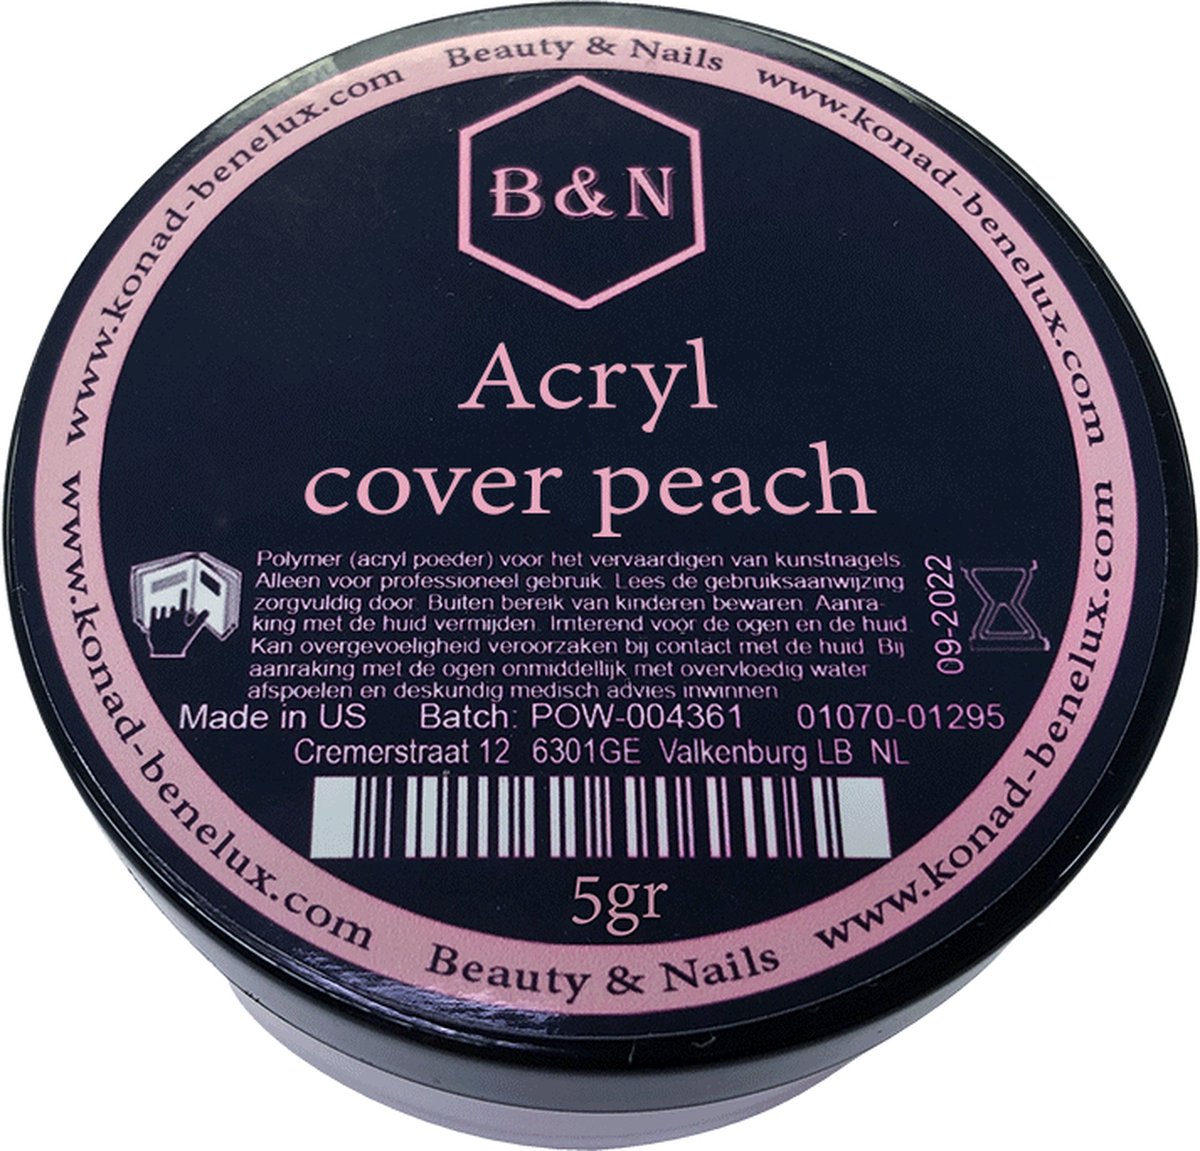 Acryl - cover peach - 5 gr | B&N - acrylpoeder - VEGAN - acrylpoeder